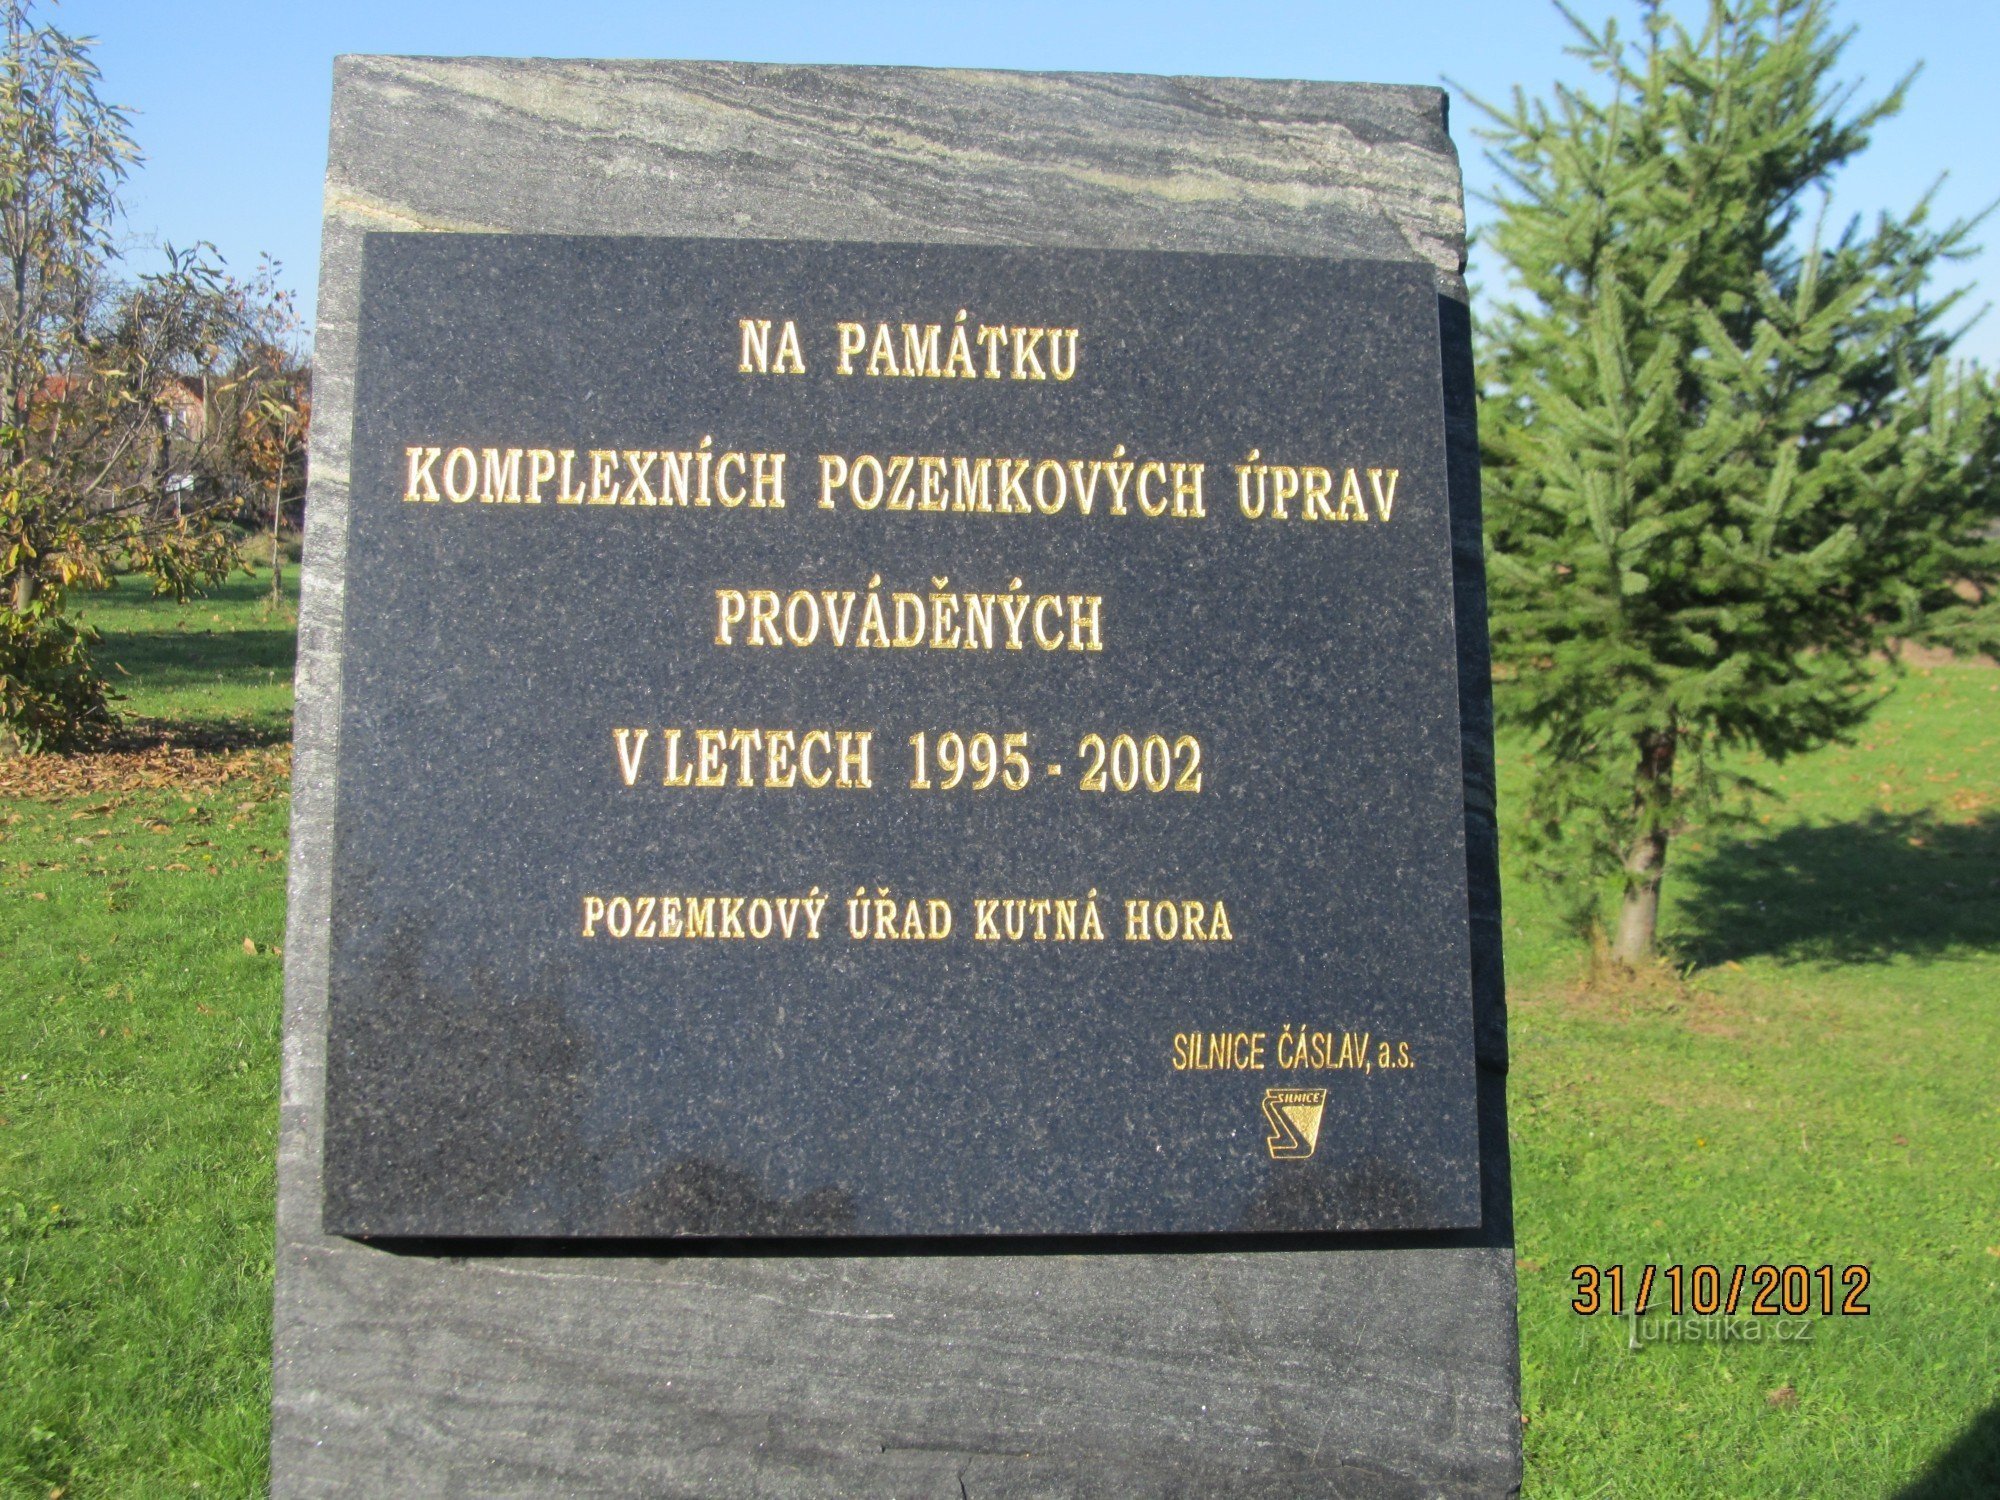 Monument à Hlízov devant le cimetière - inscription sur le monument